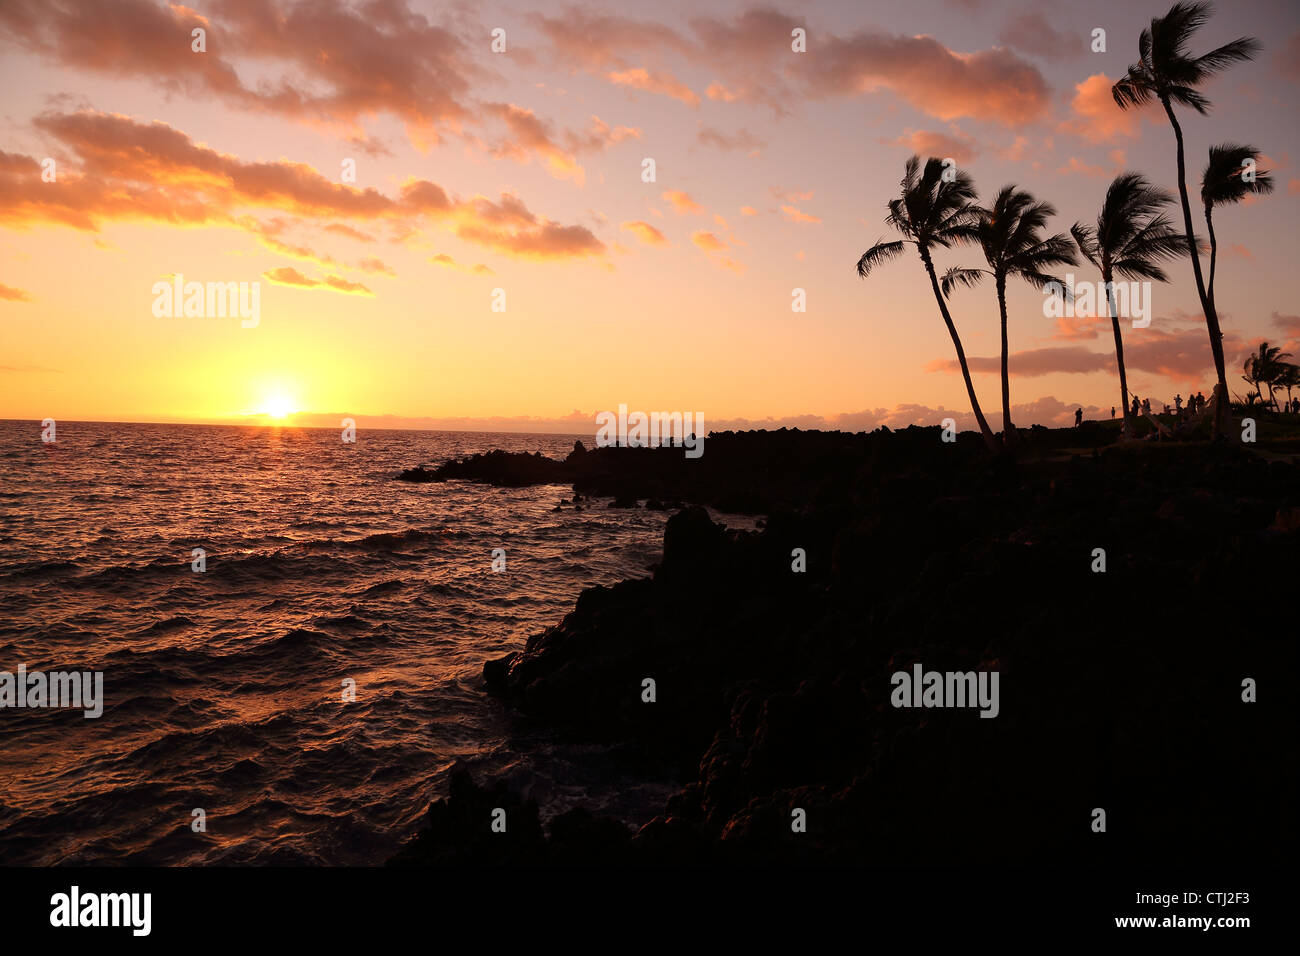 Sunset over rocky Hawaiian coastline Stock Photo